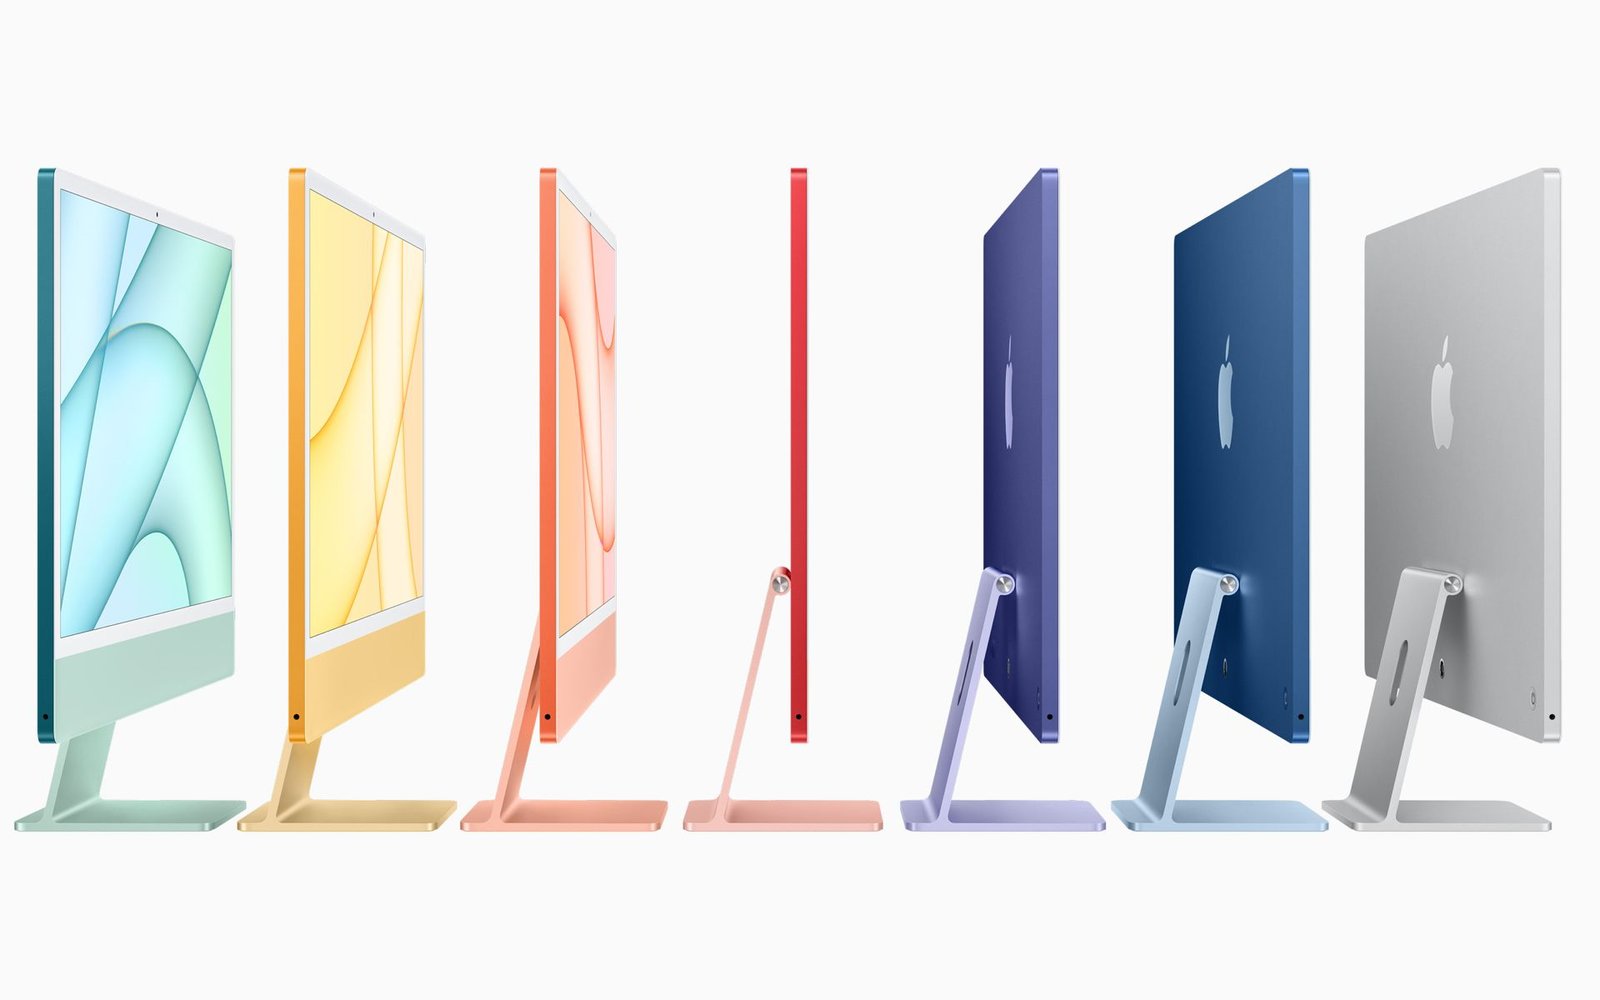 La gamme iMac d'Apple et les différentes couleurs disponibles.